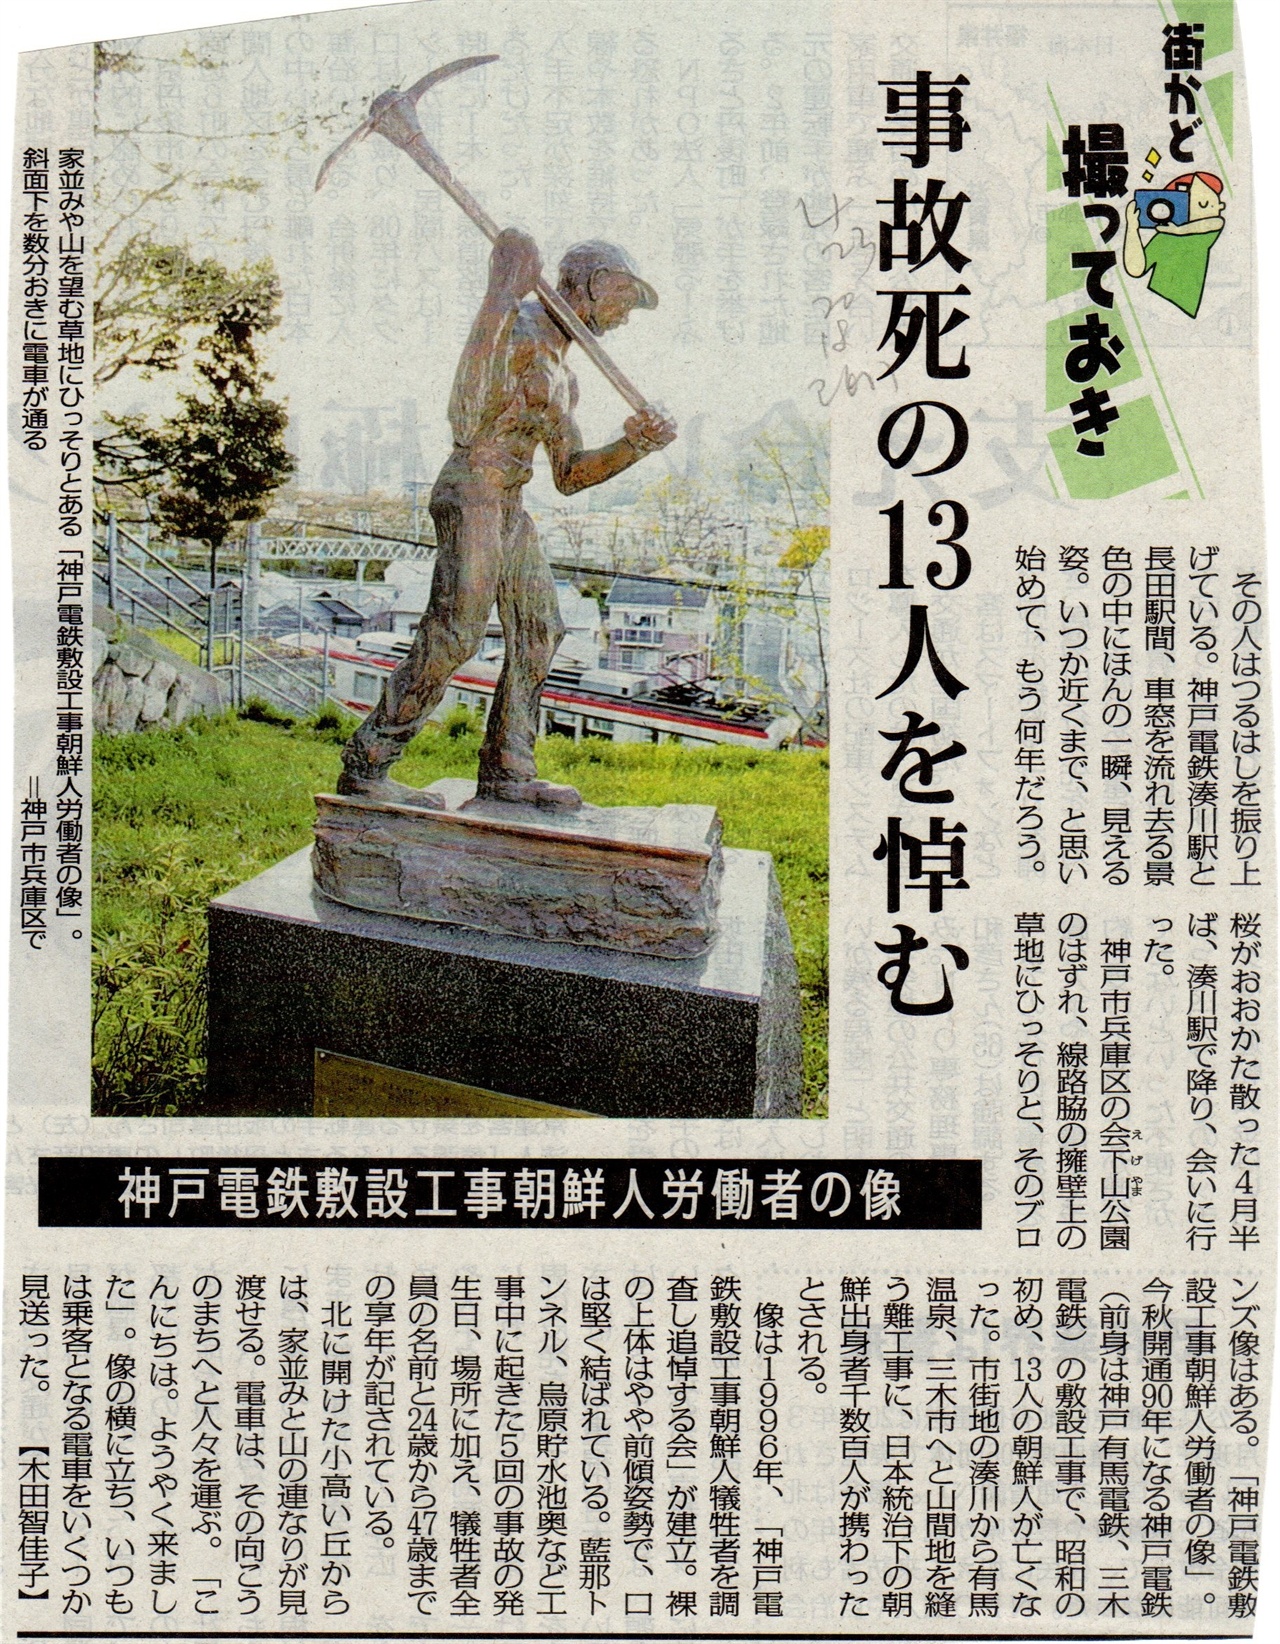           2018년 4월 23일, 고베신문에 실린 조선인 노동자 동상 관련 기사입니다. 